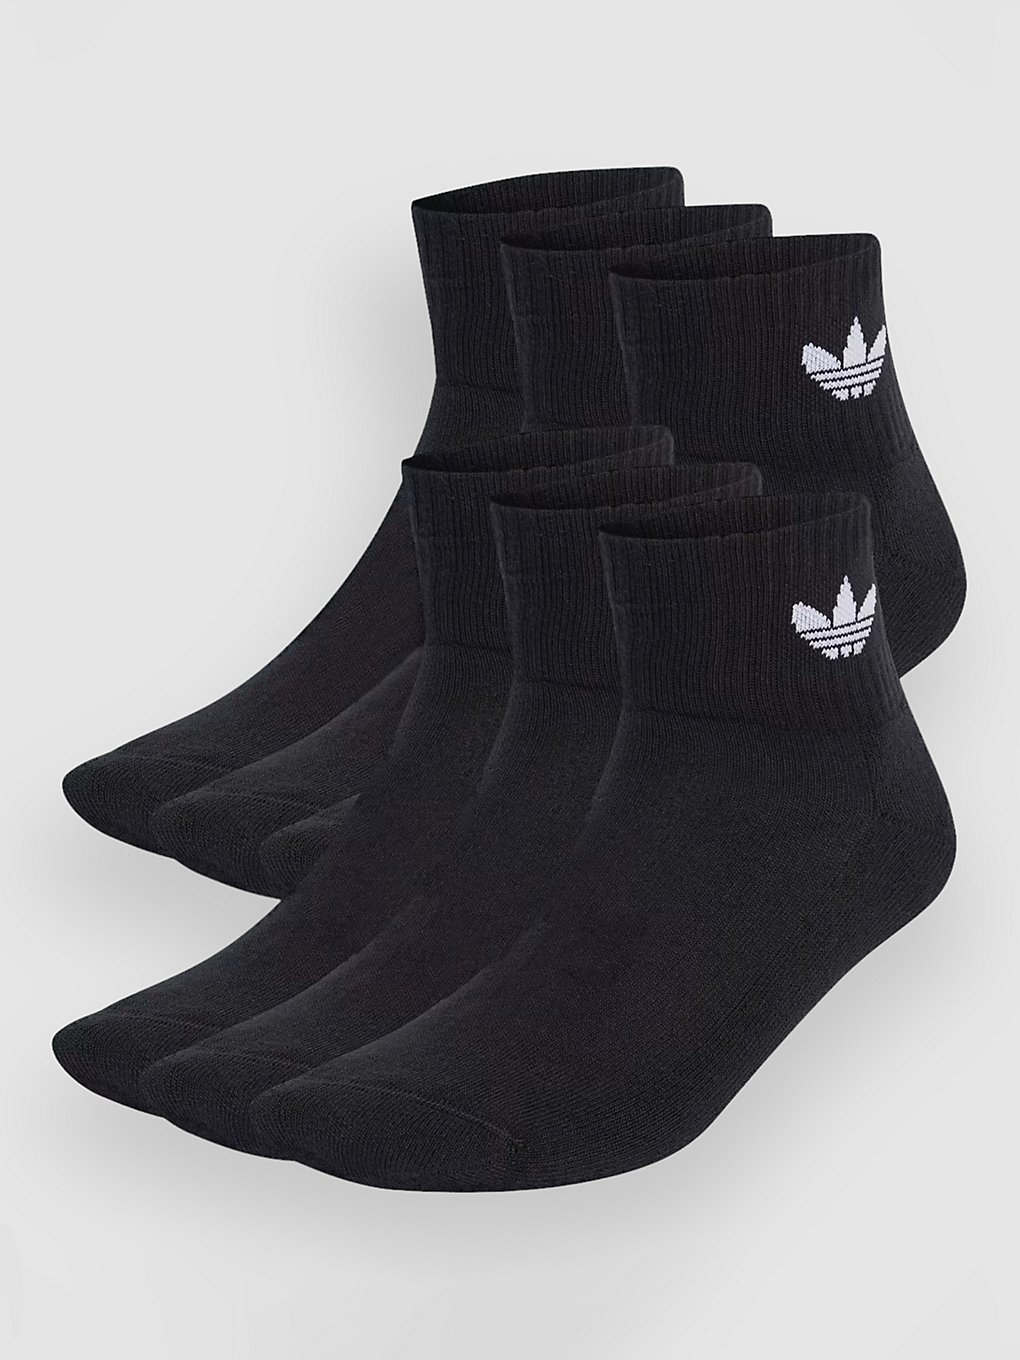 adidas Originals Mid Ankle Socken black kaufen